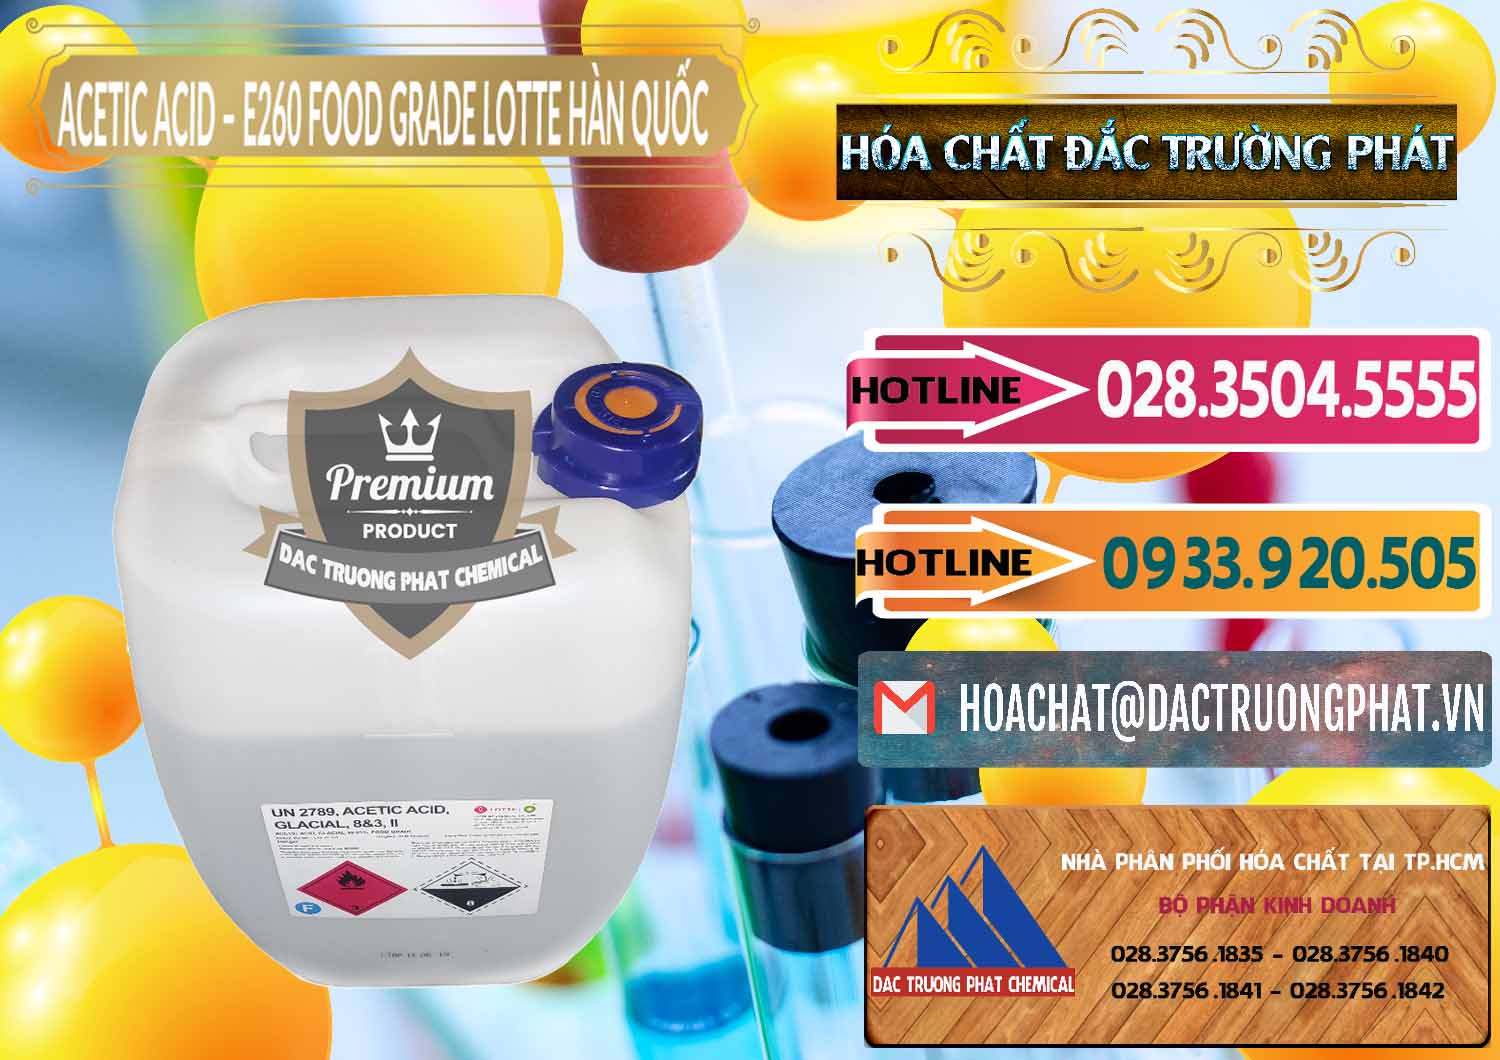 Cty chuyên kinh doanh & bán Acetic Acid – Axit Acetic E260 Food Grade Hàn Quốc Lotte Korea - 0003 - Đơn vị phân phối và bán hóa chất tại TP.HCM - dactruongphat.vn